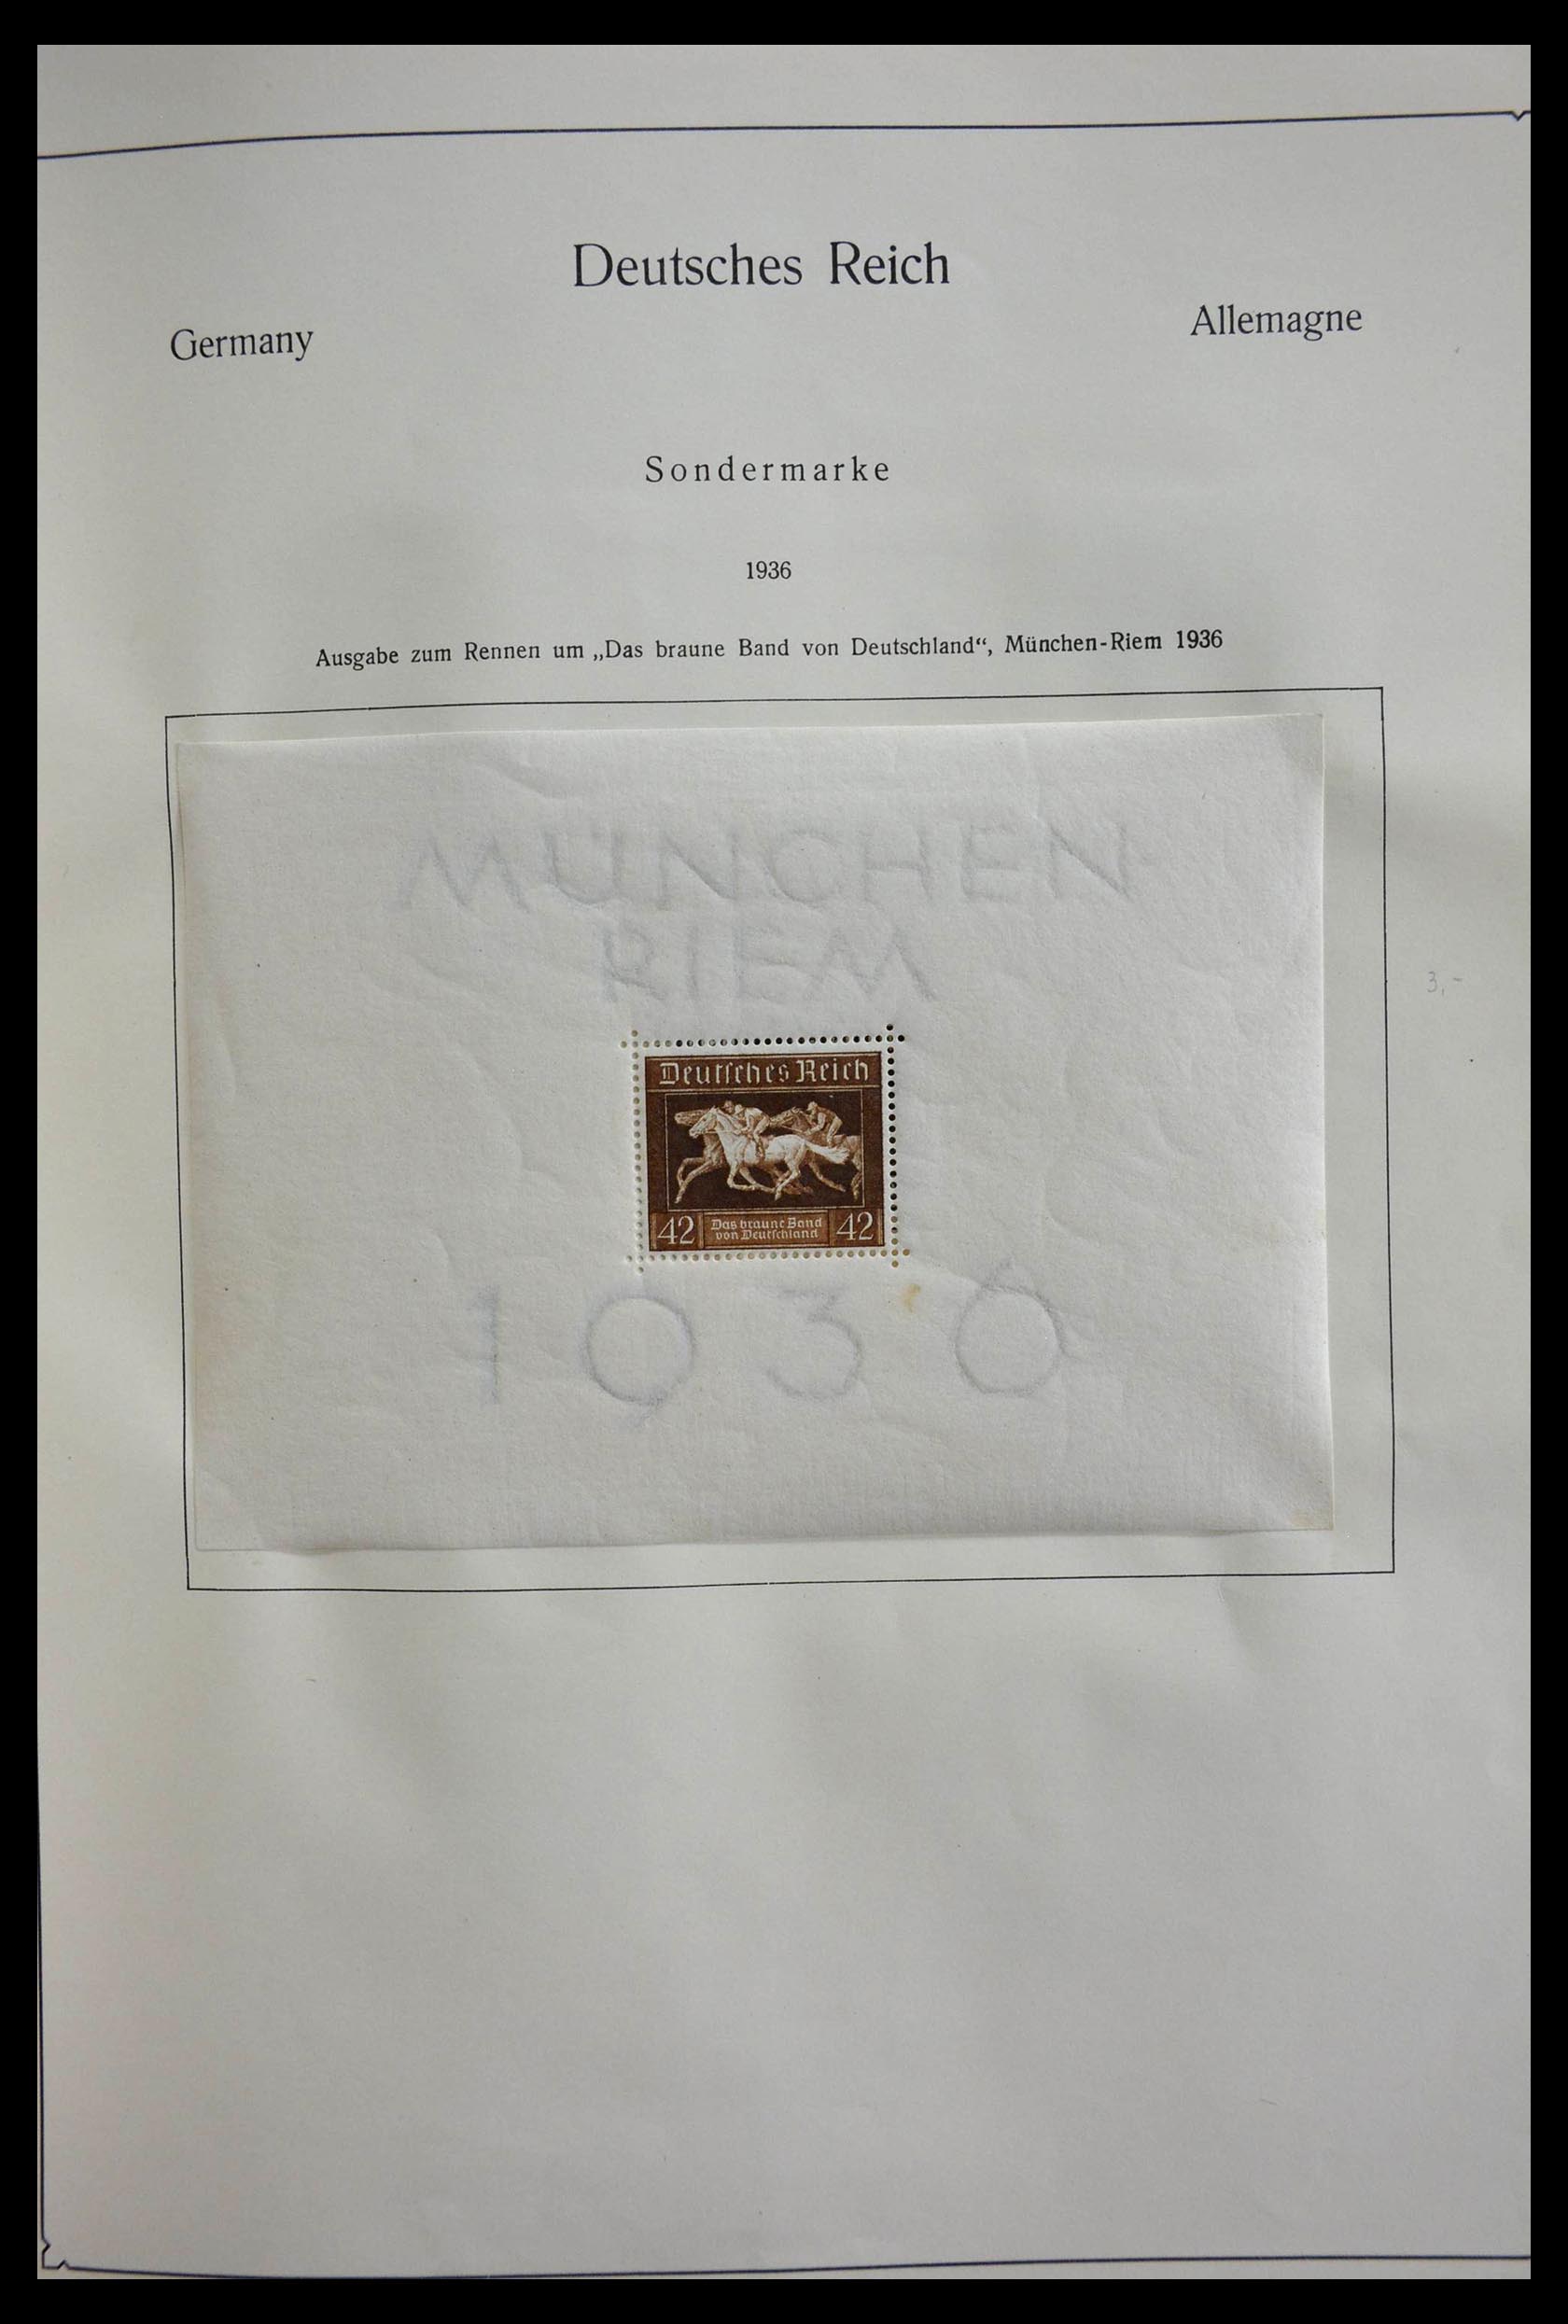 28728 029 - 28728 Duitsland 1872-1950.